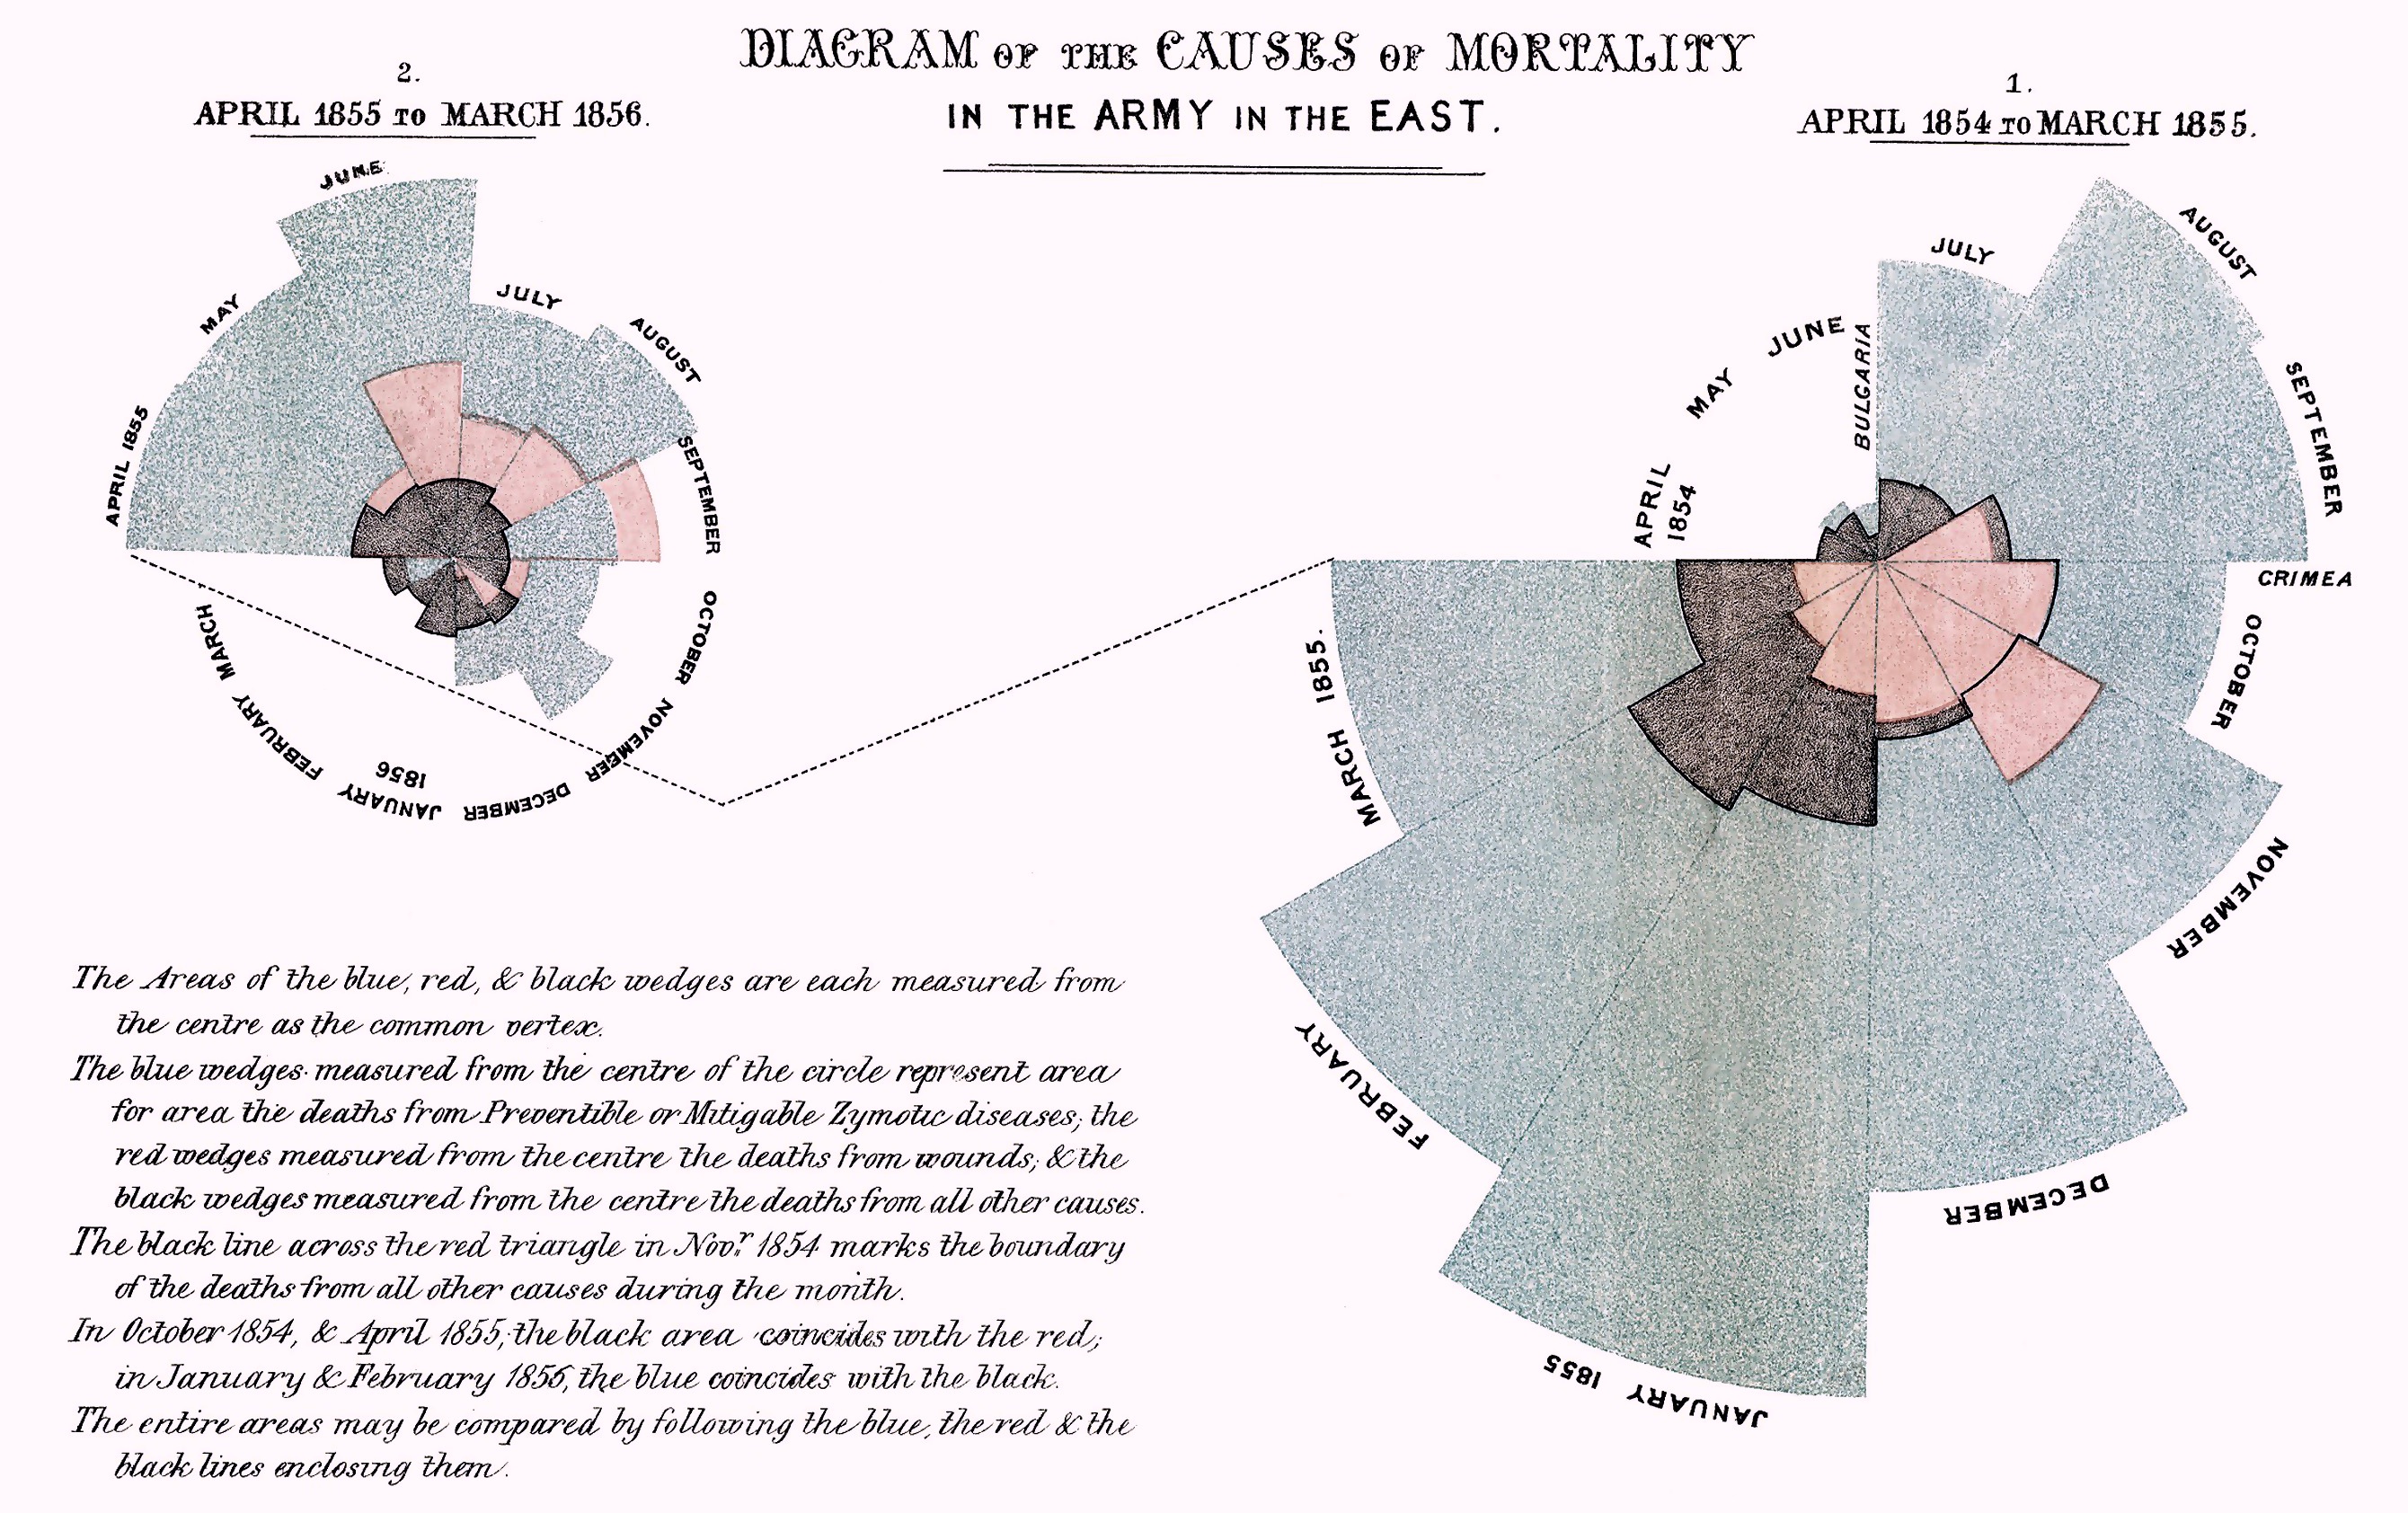 Florence Nightingales diagram over dødsårsager i den engelske hær under krimkrigen